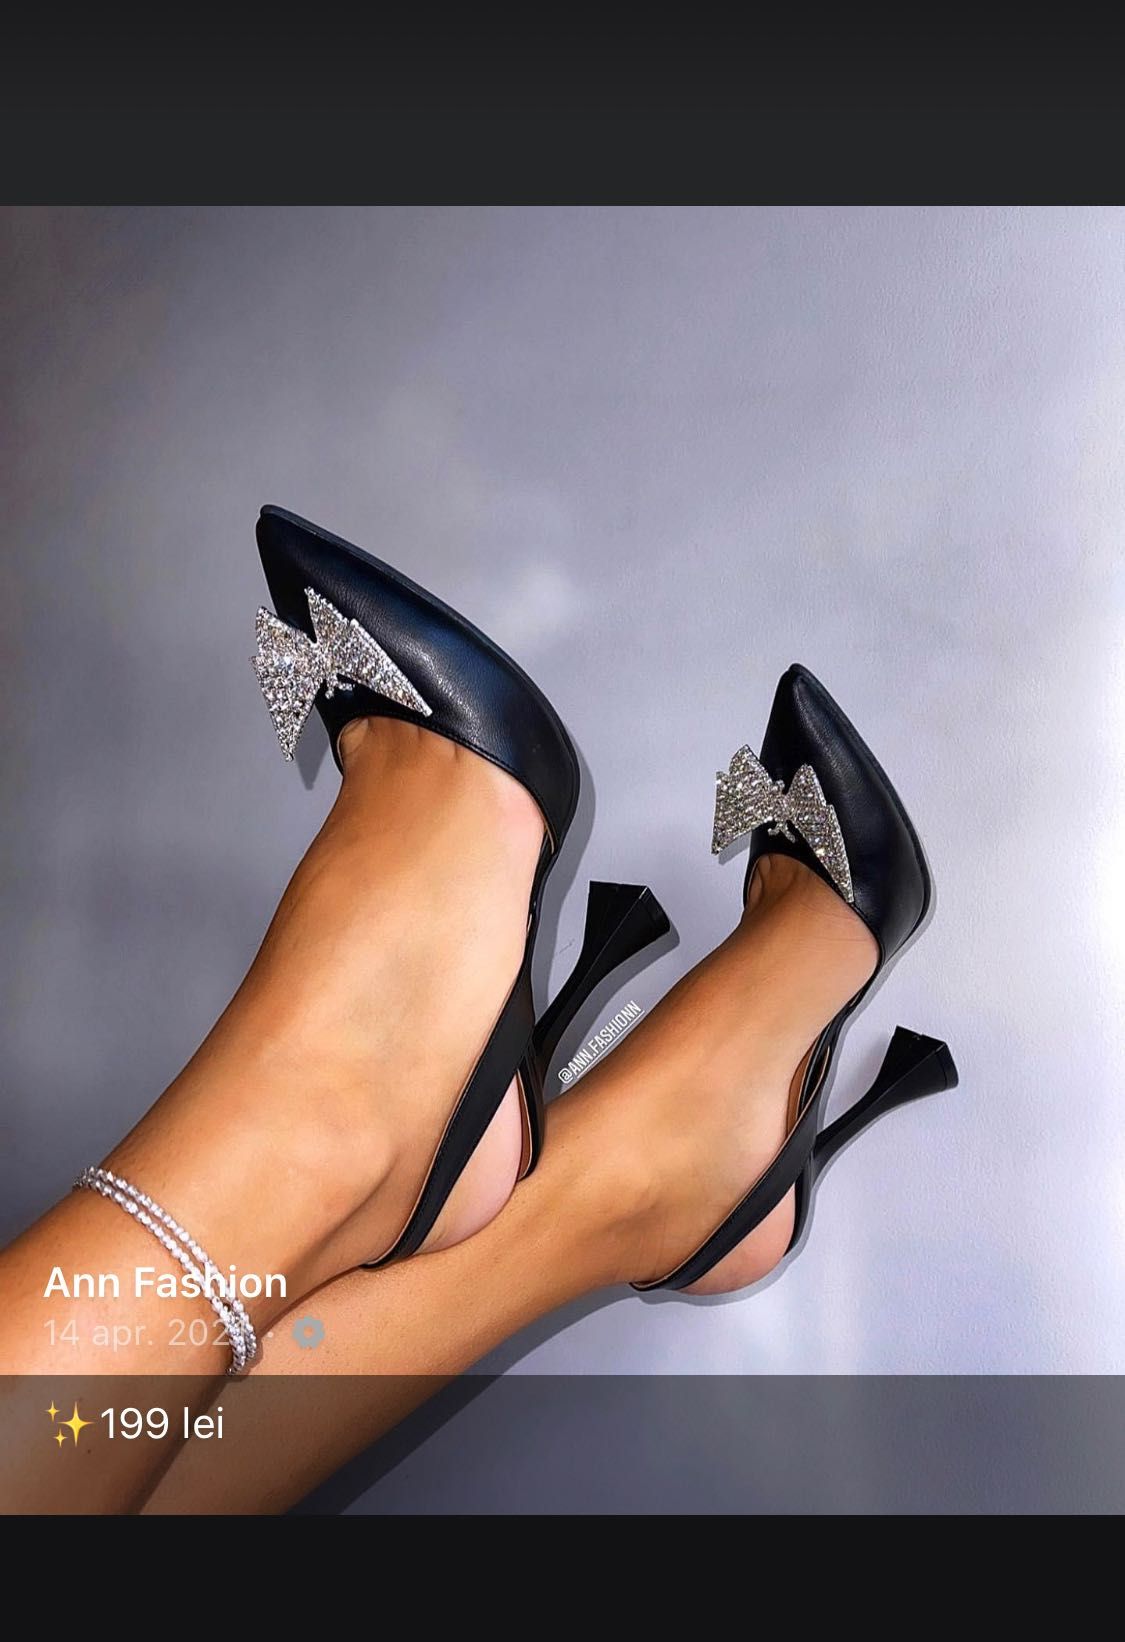 Pantofi Ann Fashion